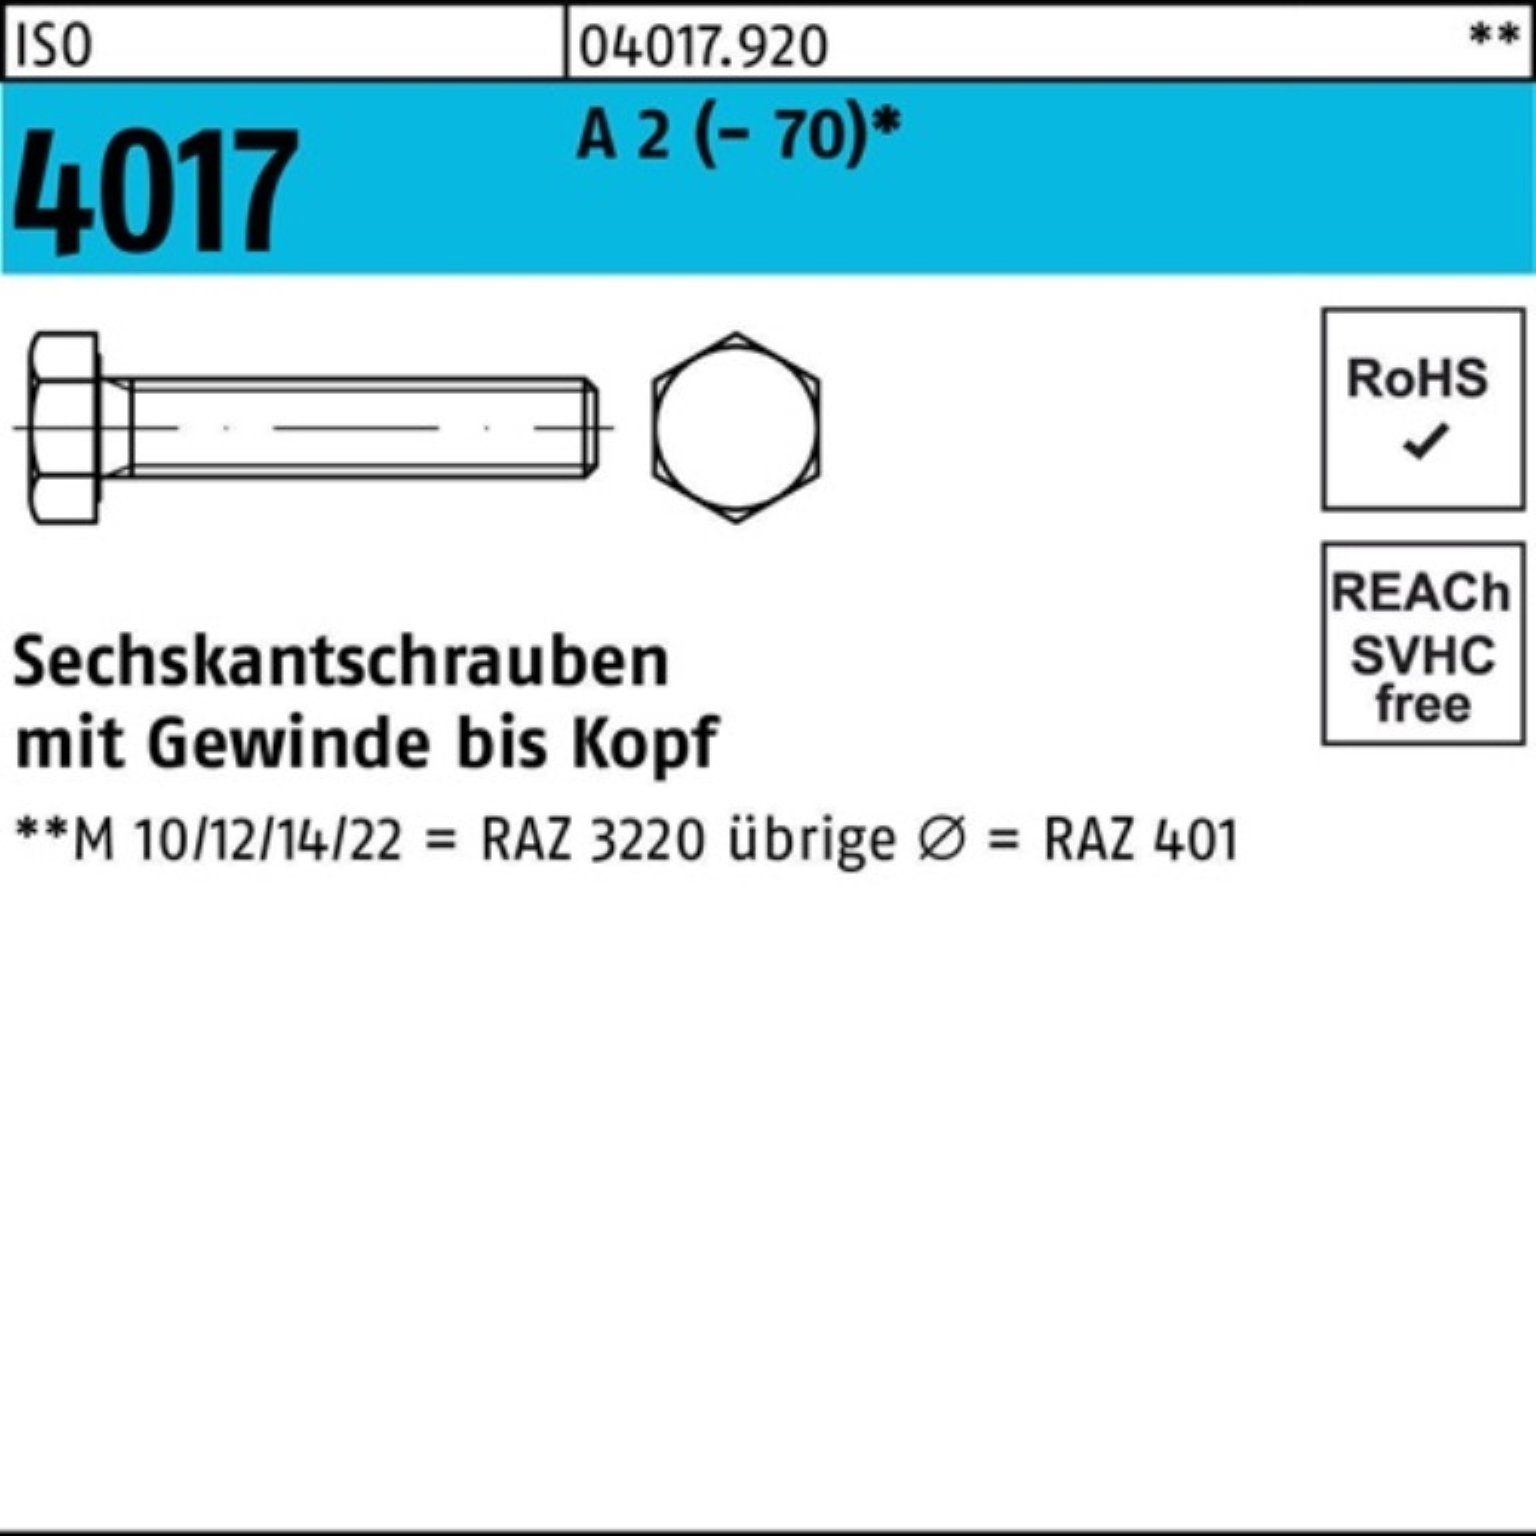 Bufab Sechskantschraube 100er Pack Sechskantschraube ISO 4017 VG M16x 110 A 2 (70) 25 Stück